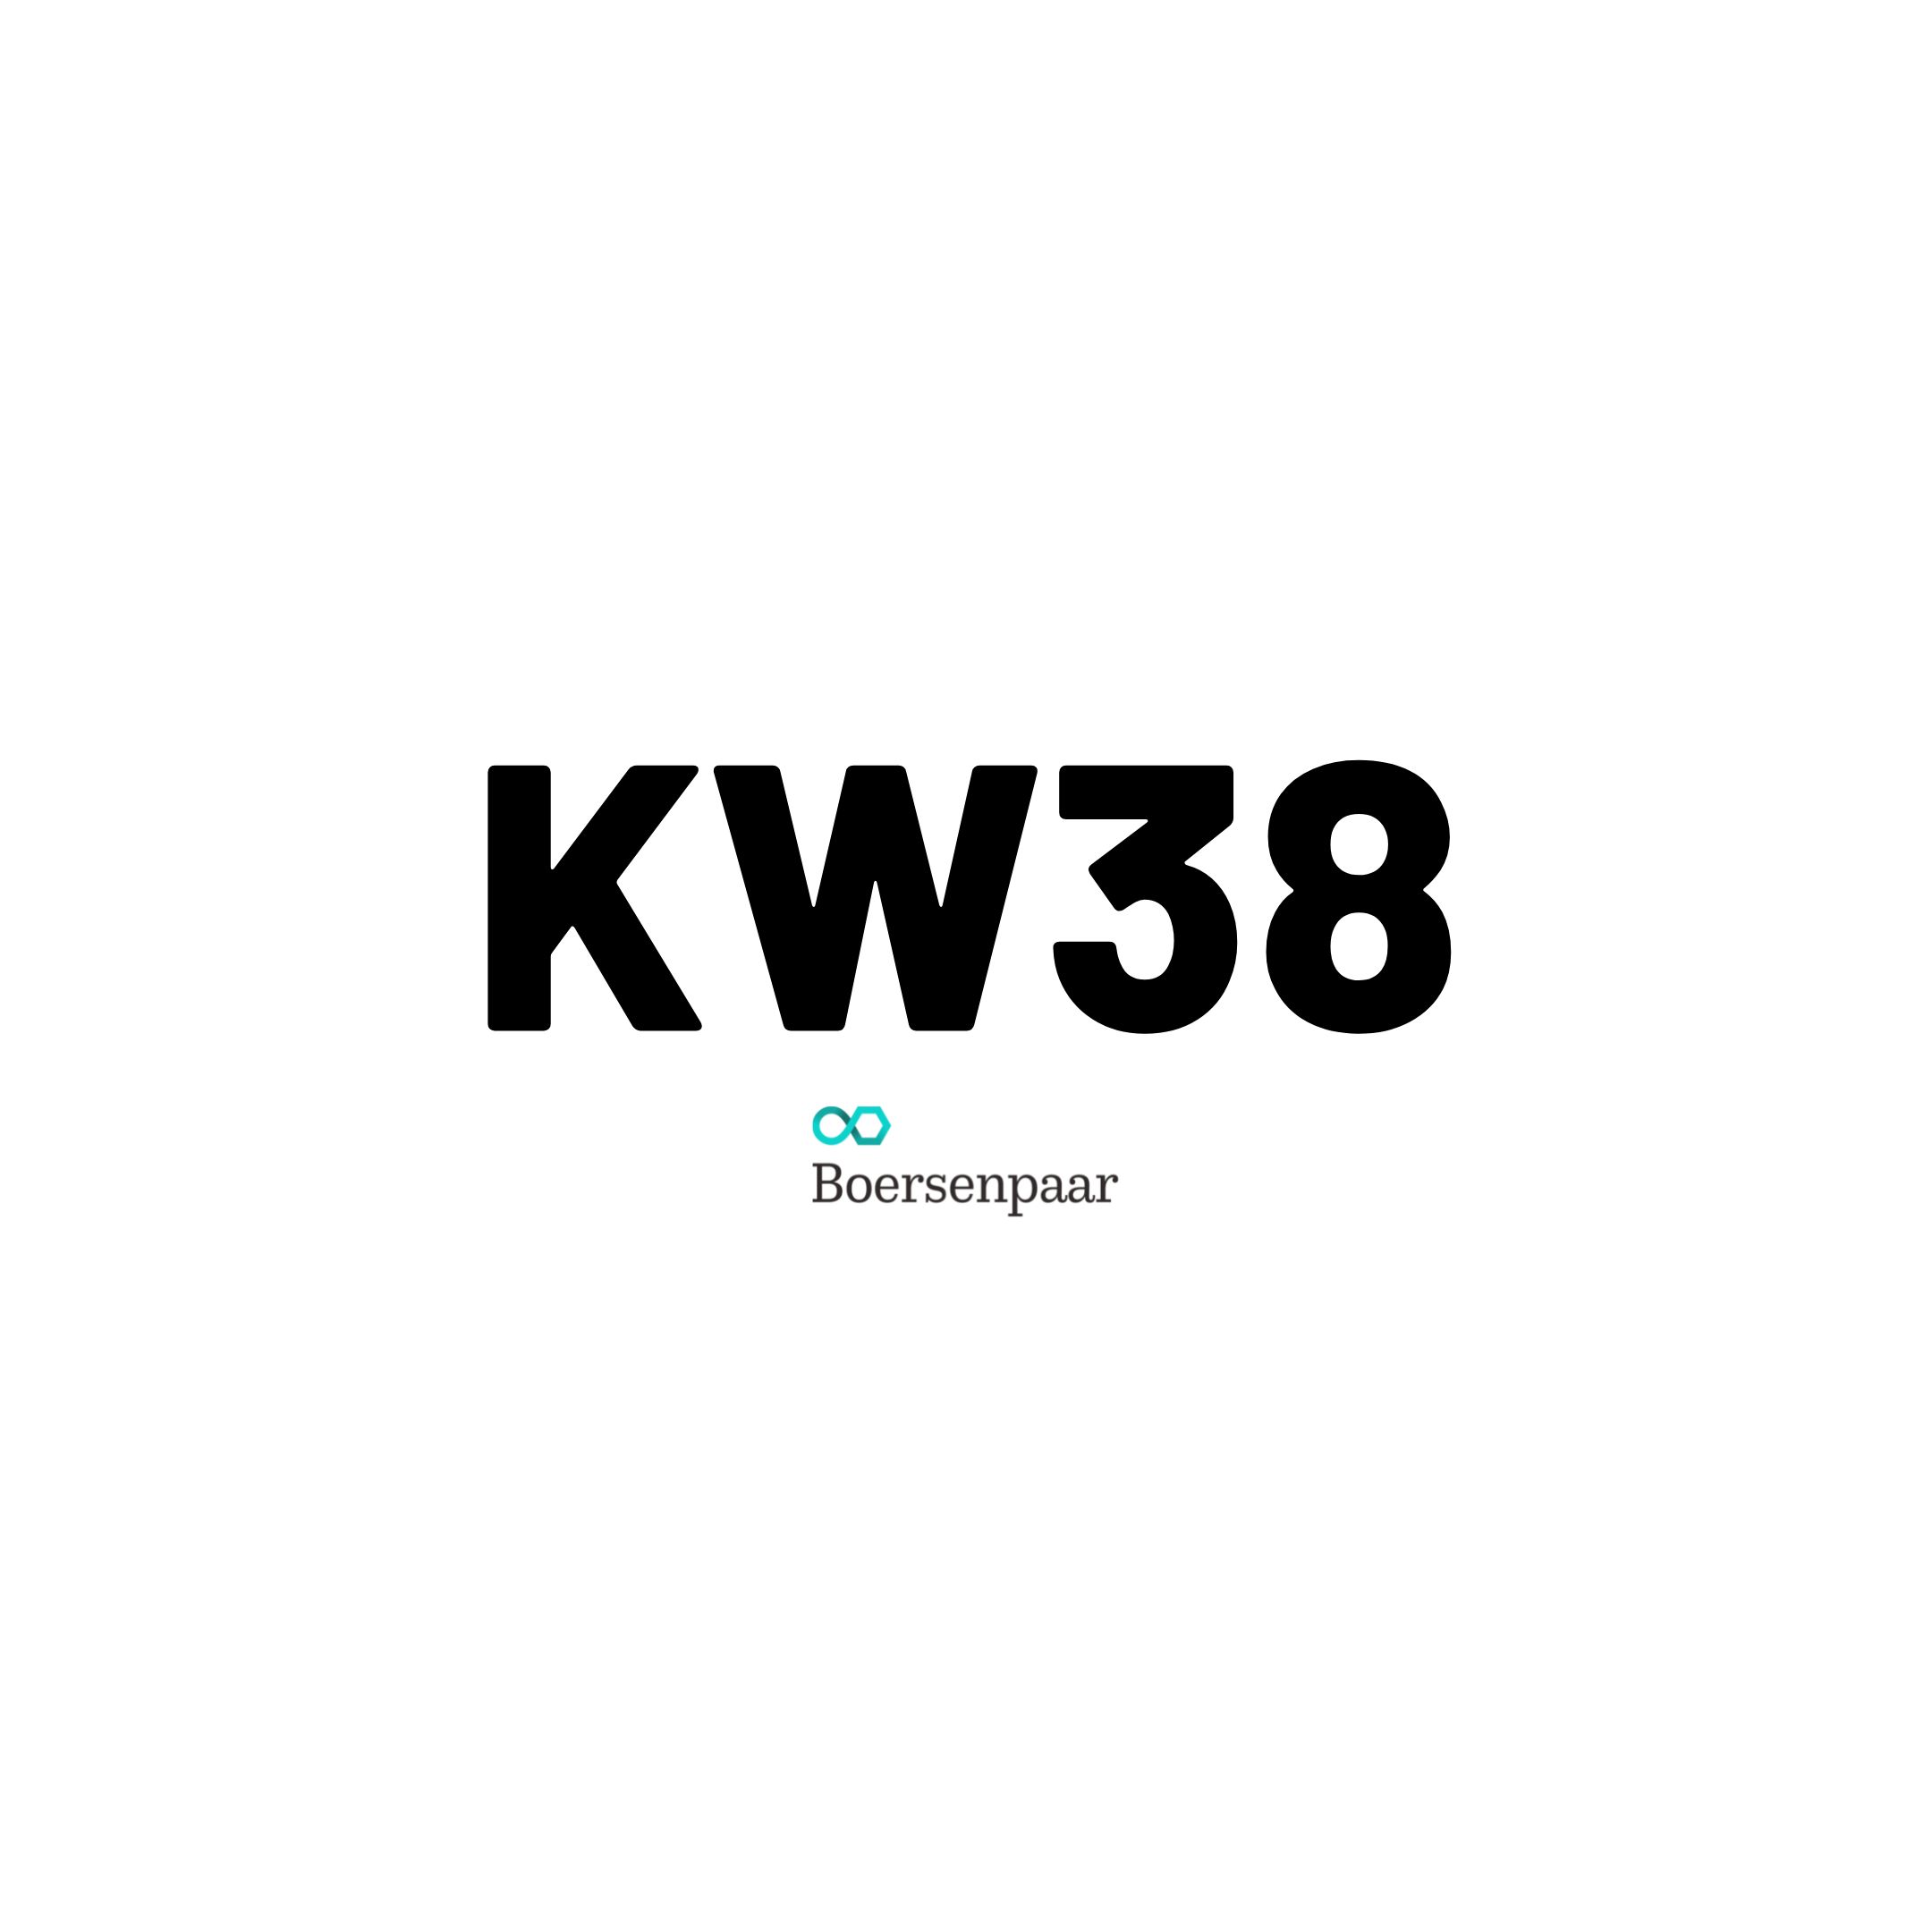 Börsentermine für die KW38 - 2022